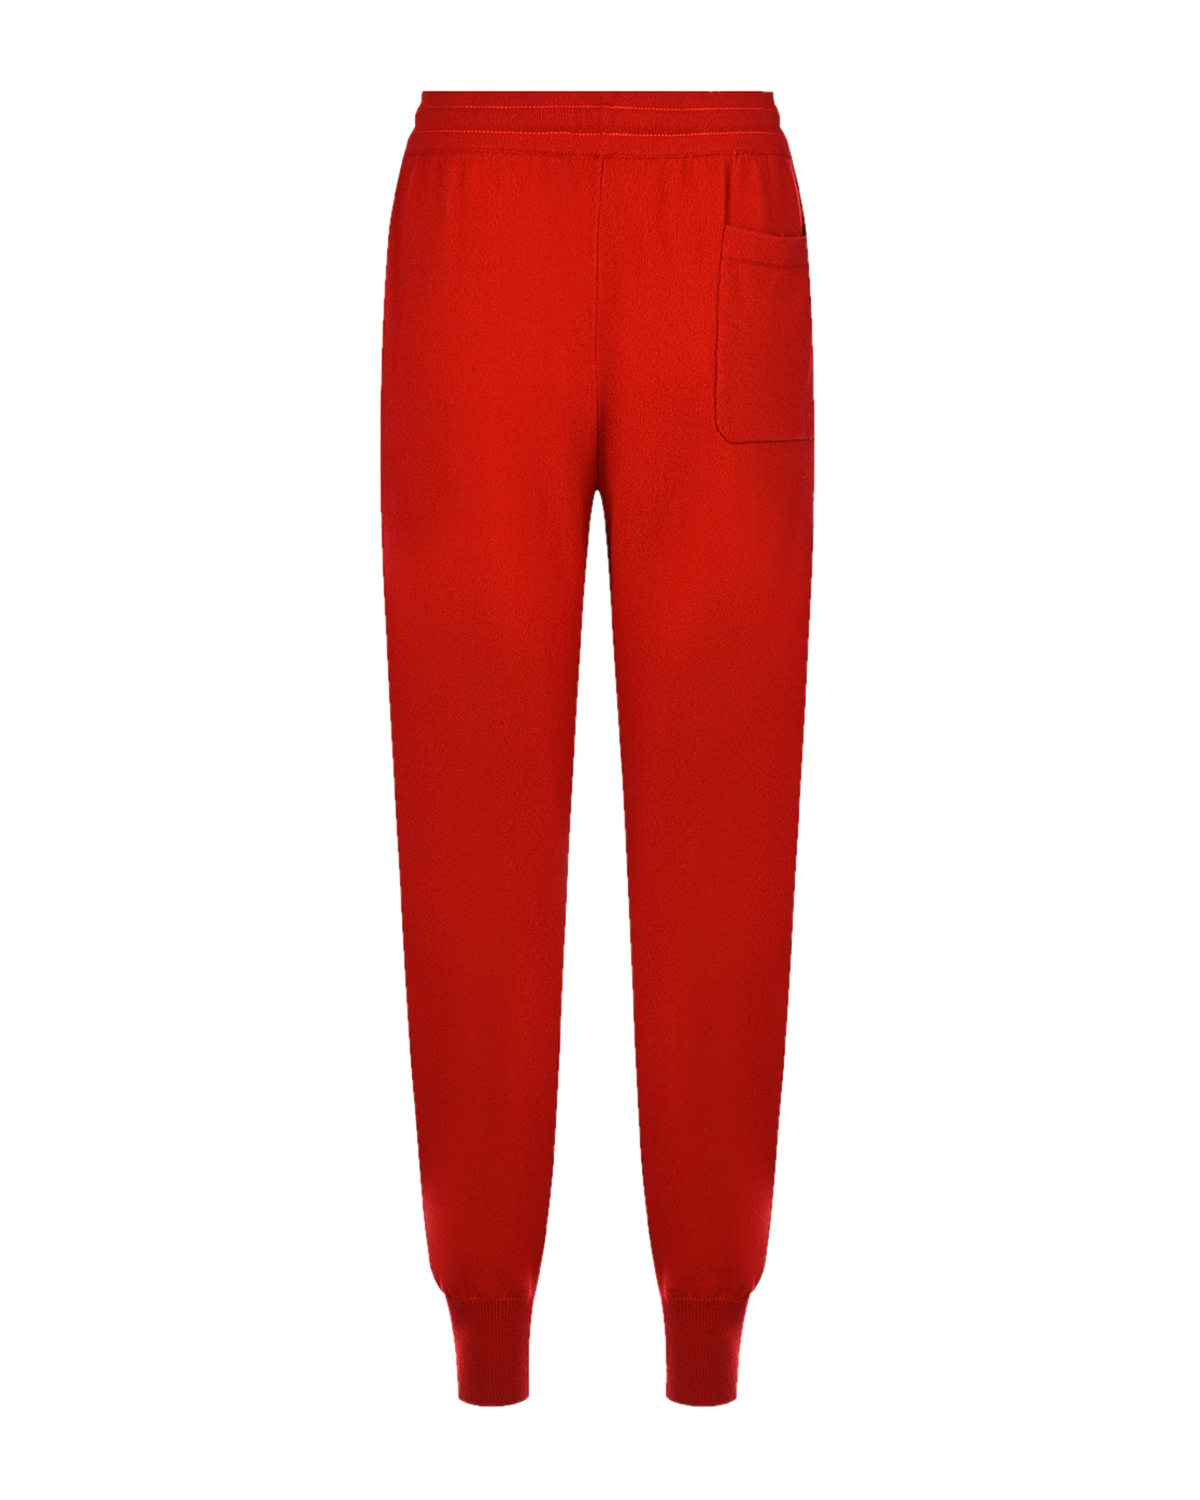 Красные спортивные брюки из кашемира Markus Lupfer, размер 40, цвет красный - фото 2